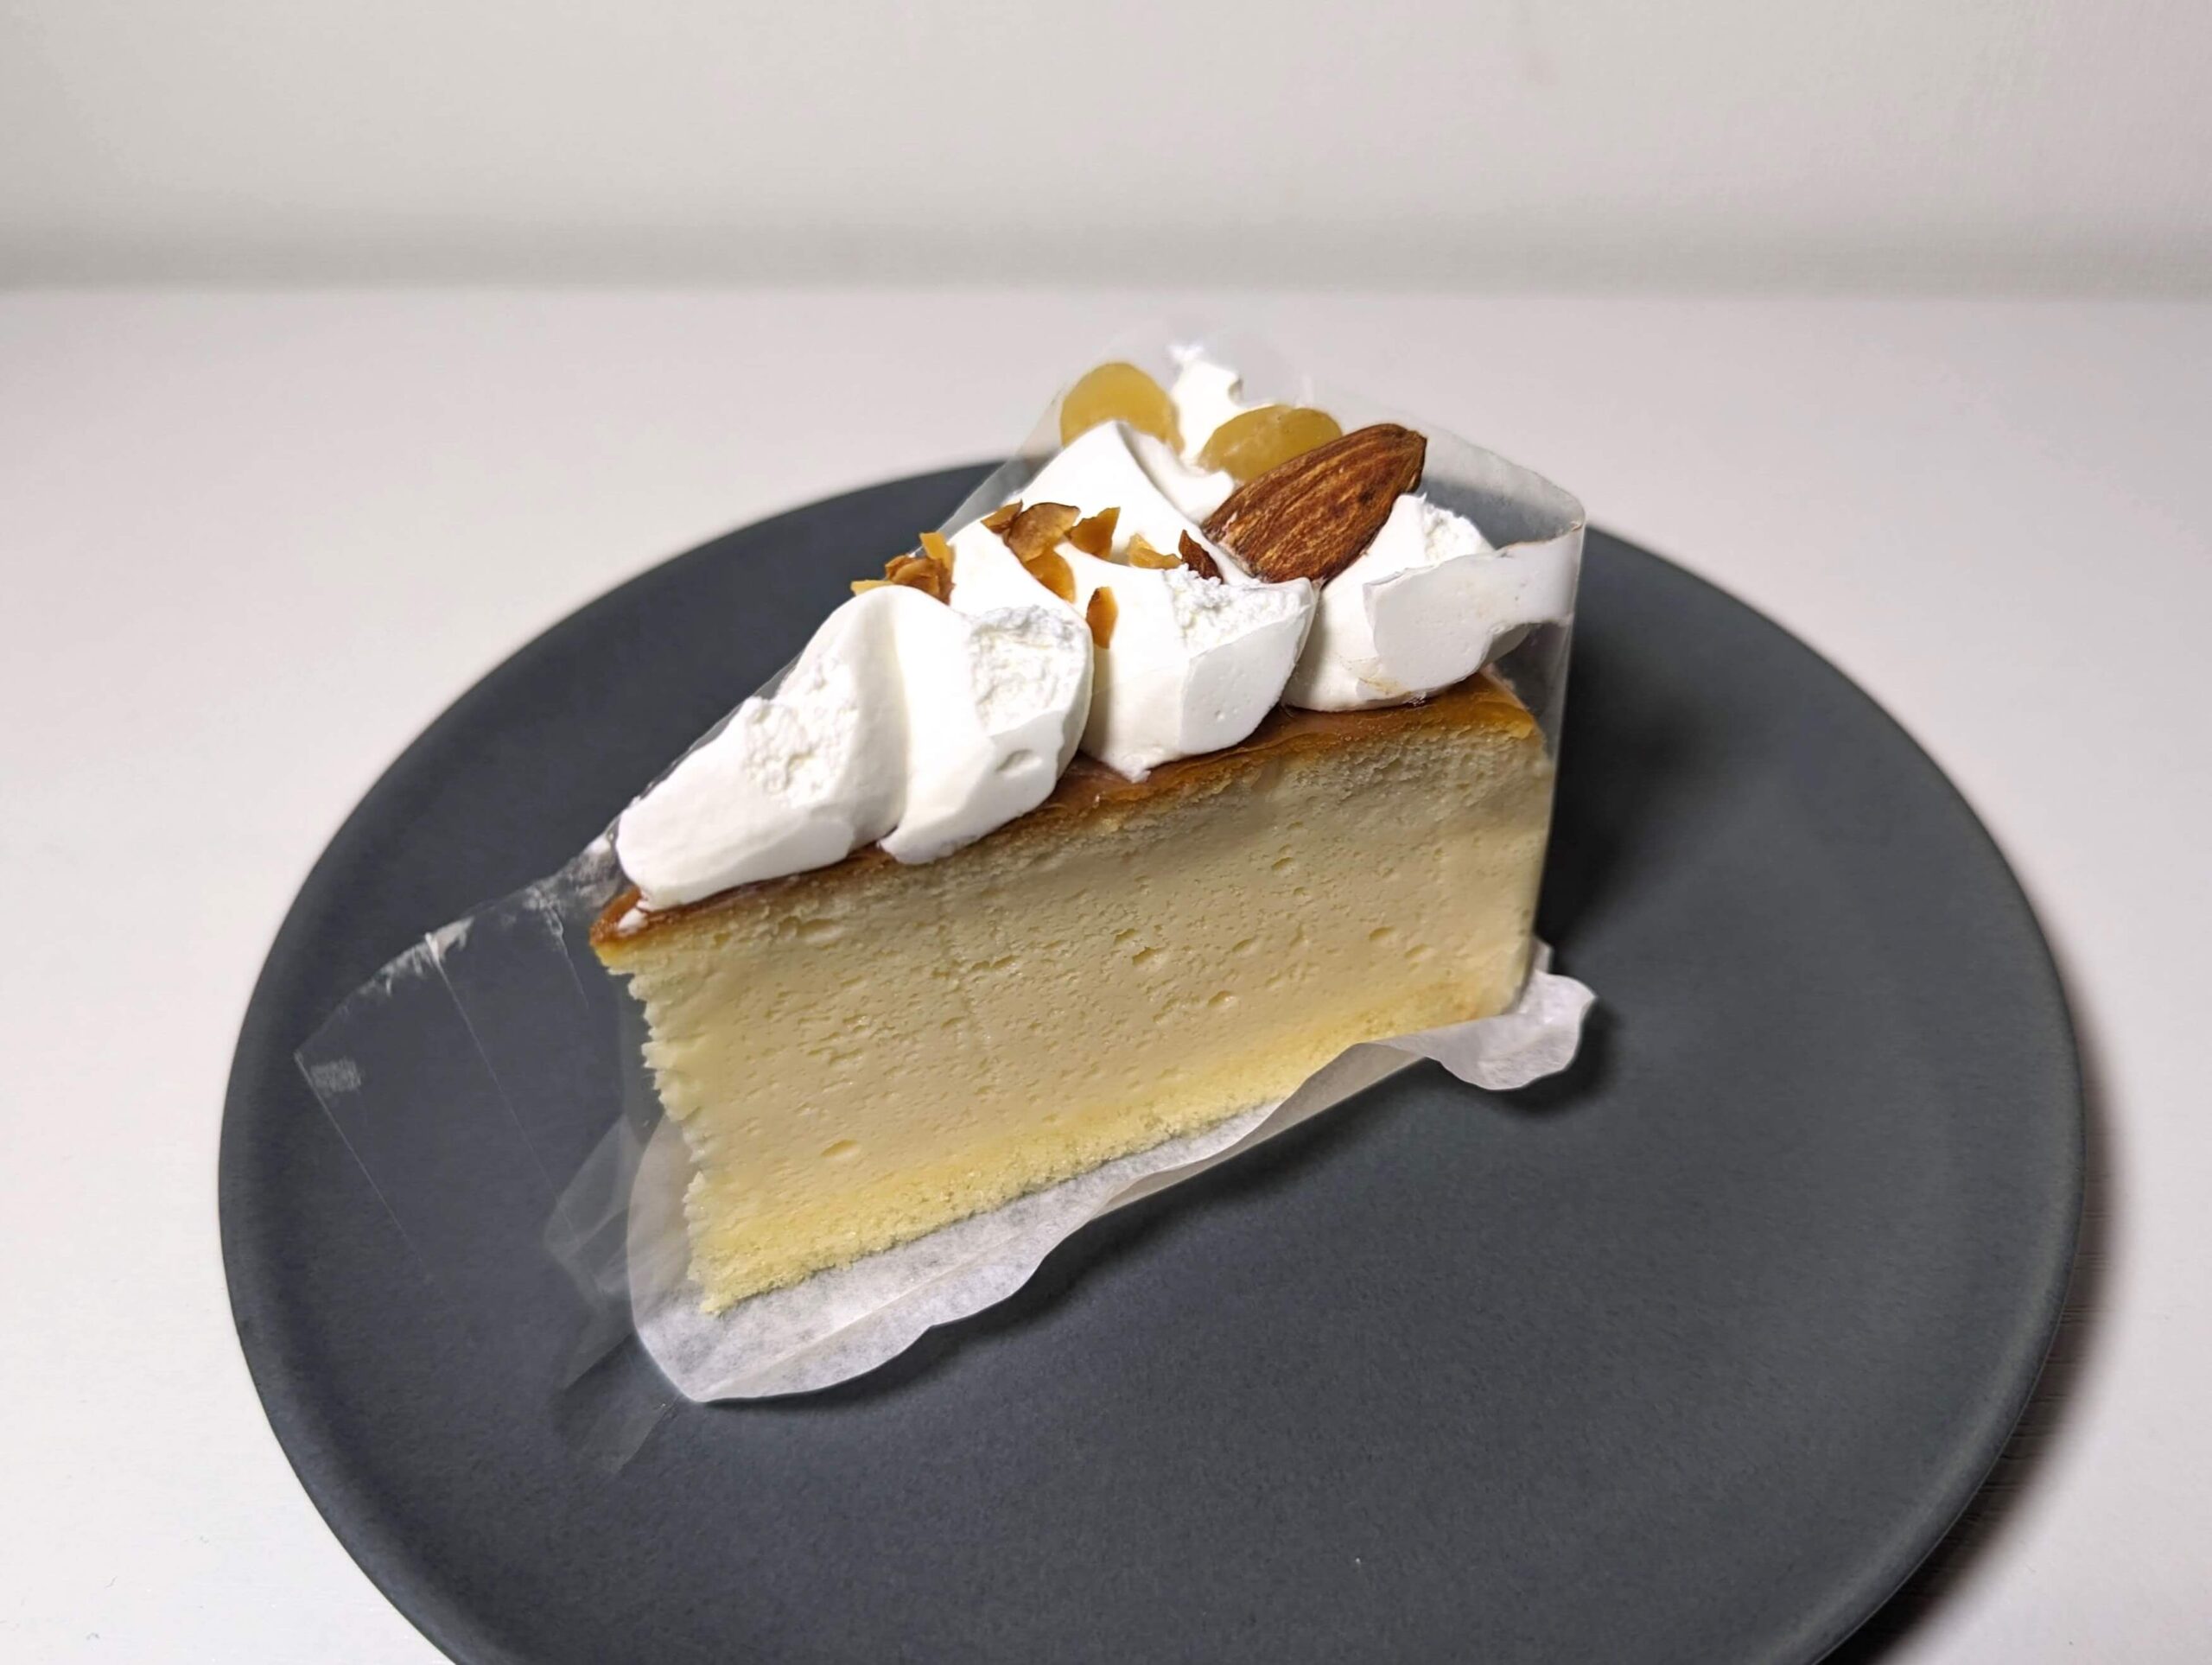 ローソン「パーティーケーキ スフレチーズケーキ2個」の写真 (4)